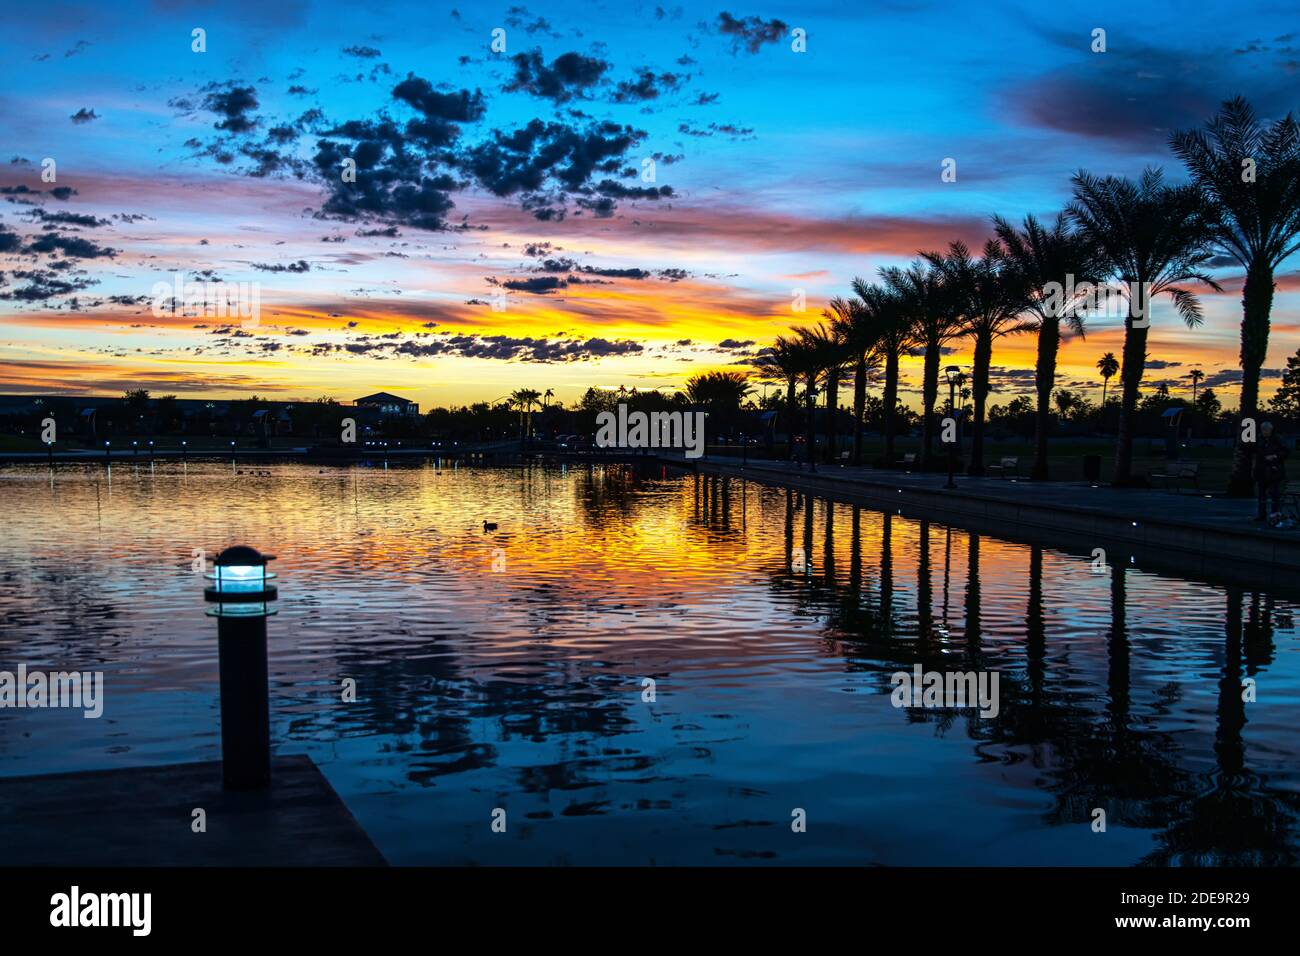 Sunup at Riverview Park in Tempe near Phoenix, Arizona Stock Photo